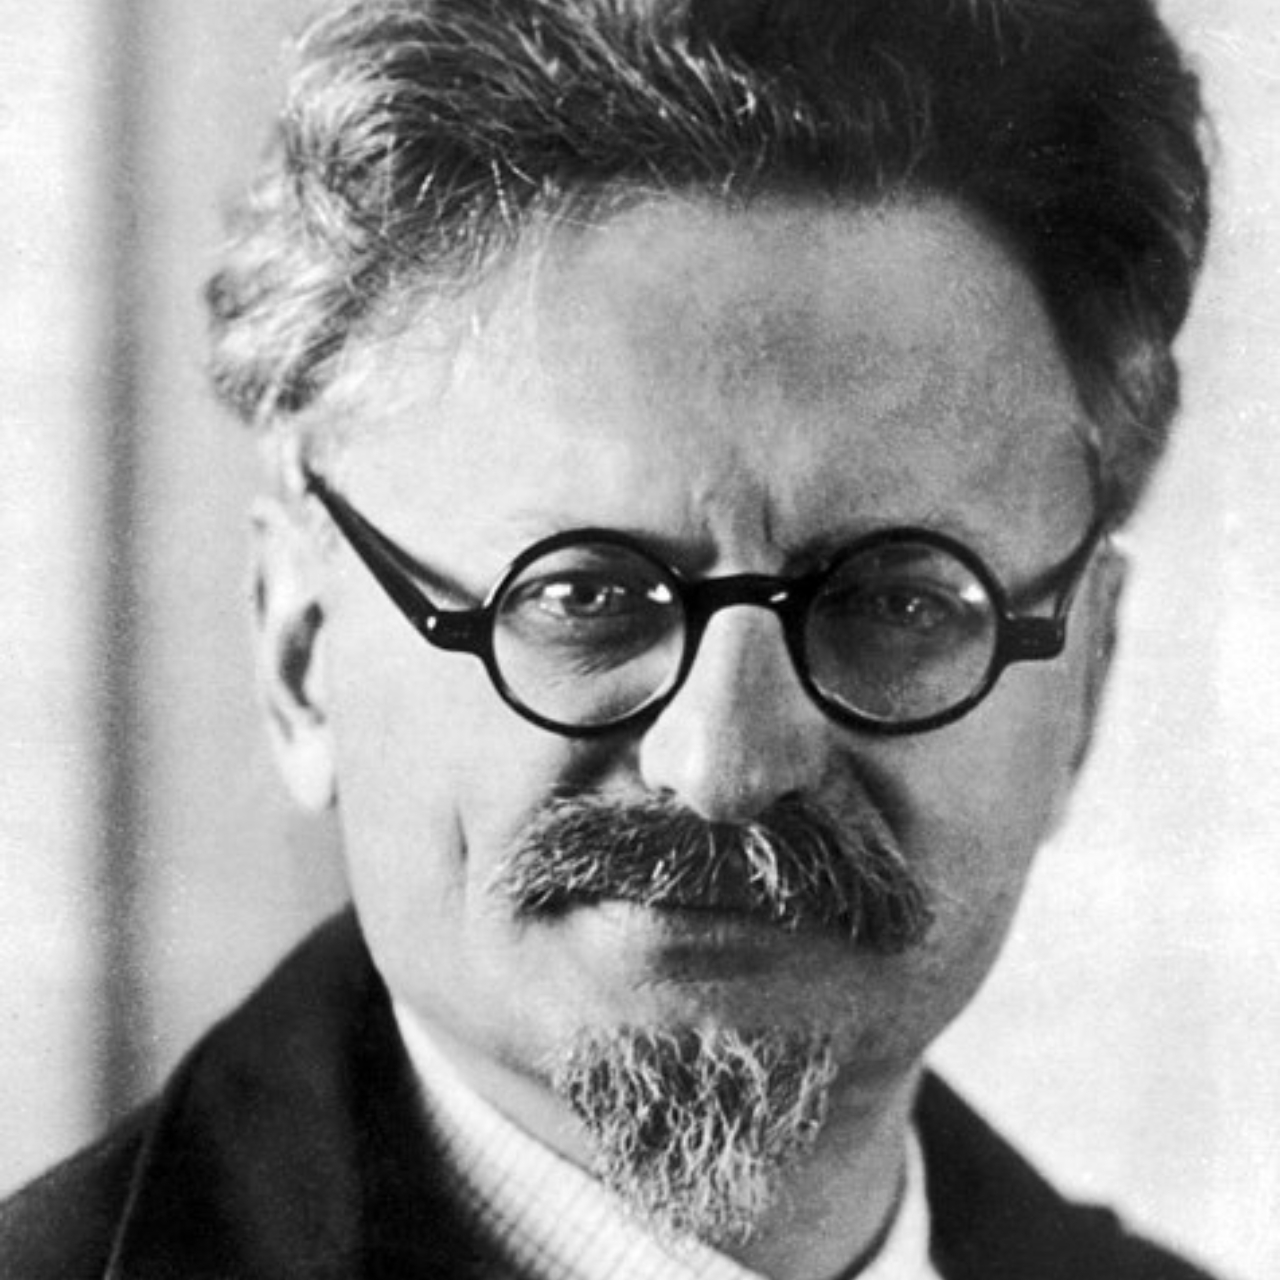 Fotografia antiga de Leon Trotsky